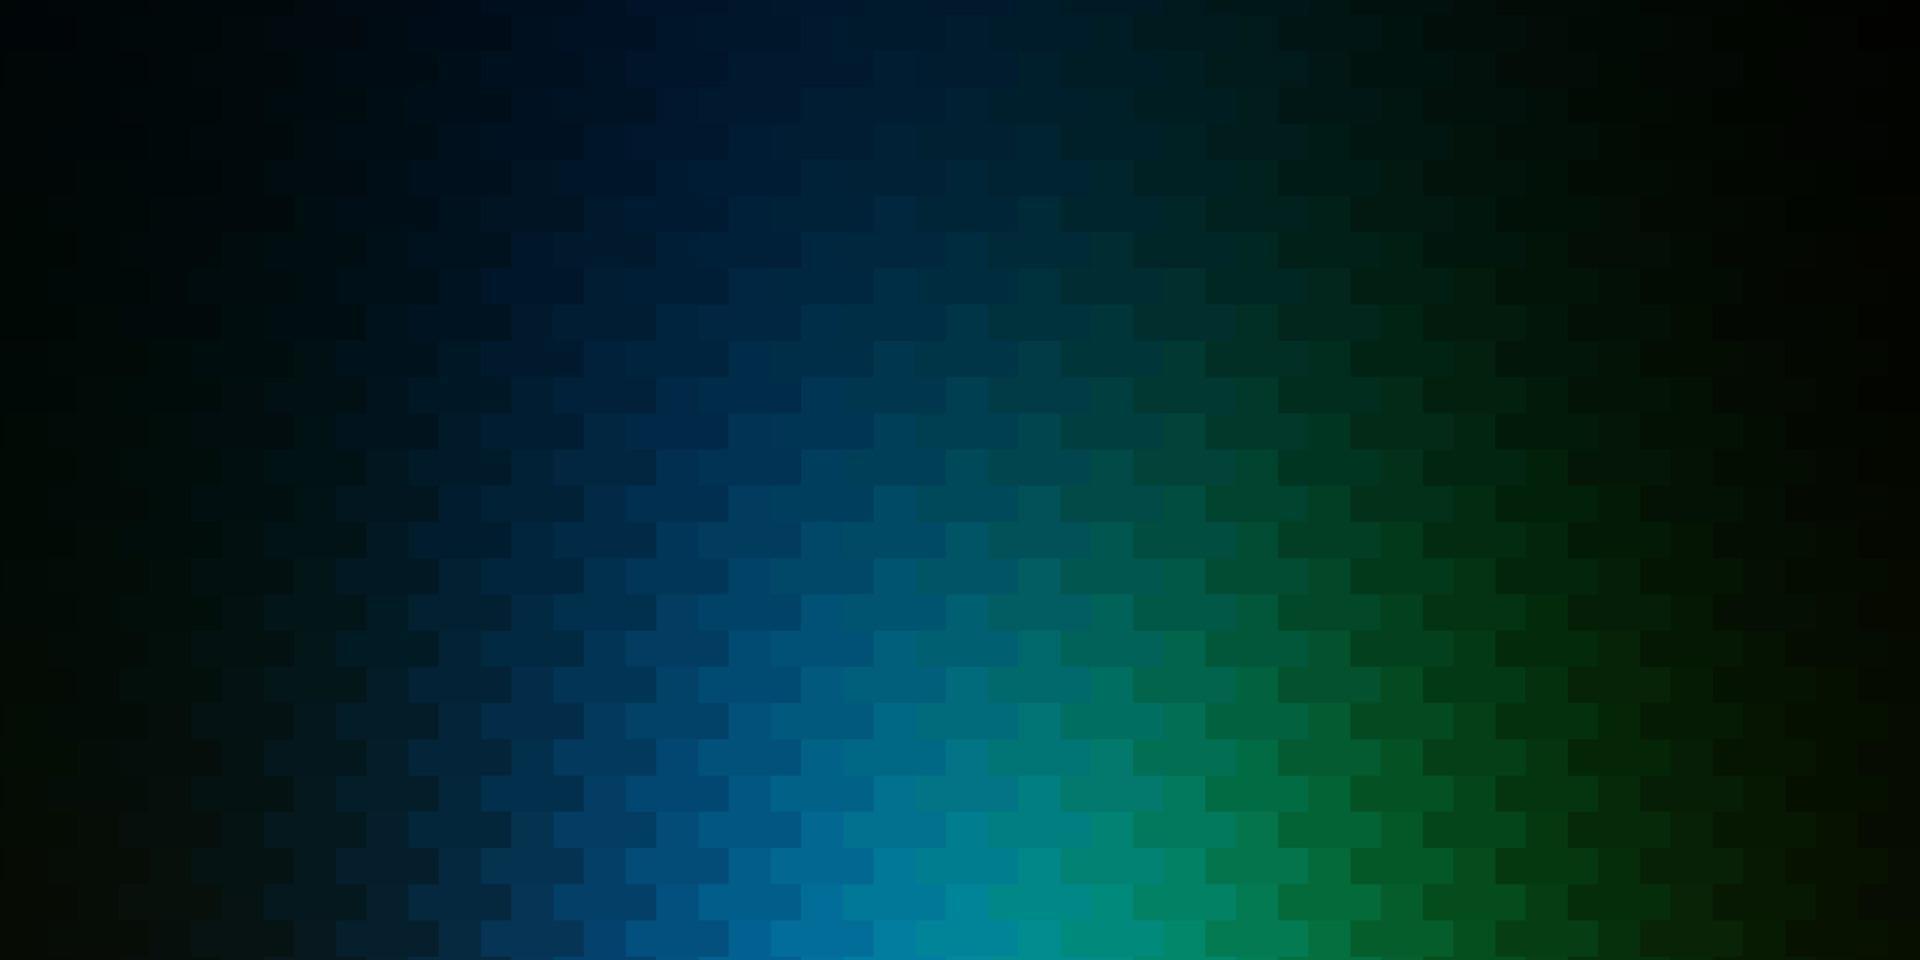 donkerblauw, groen vector sjabloon in rechthoeken.